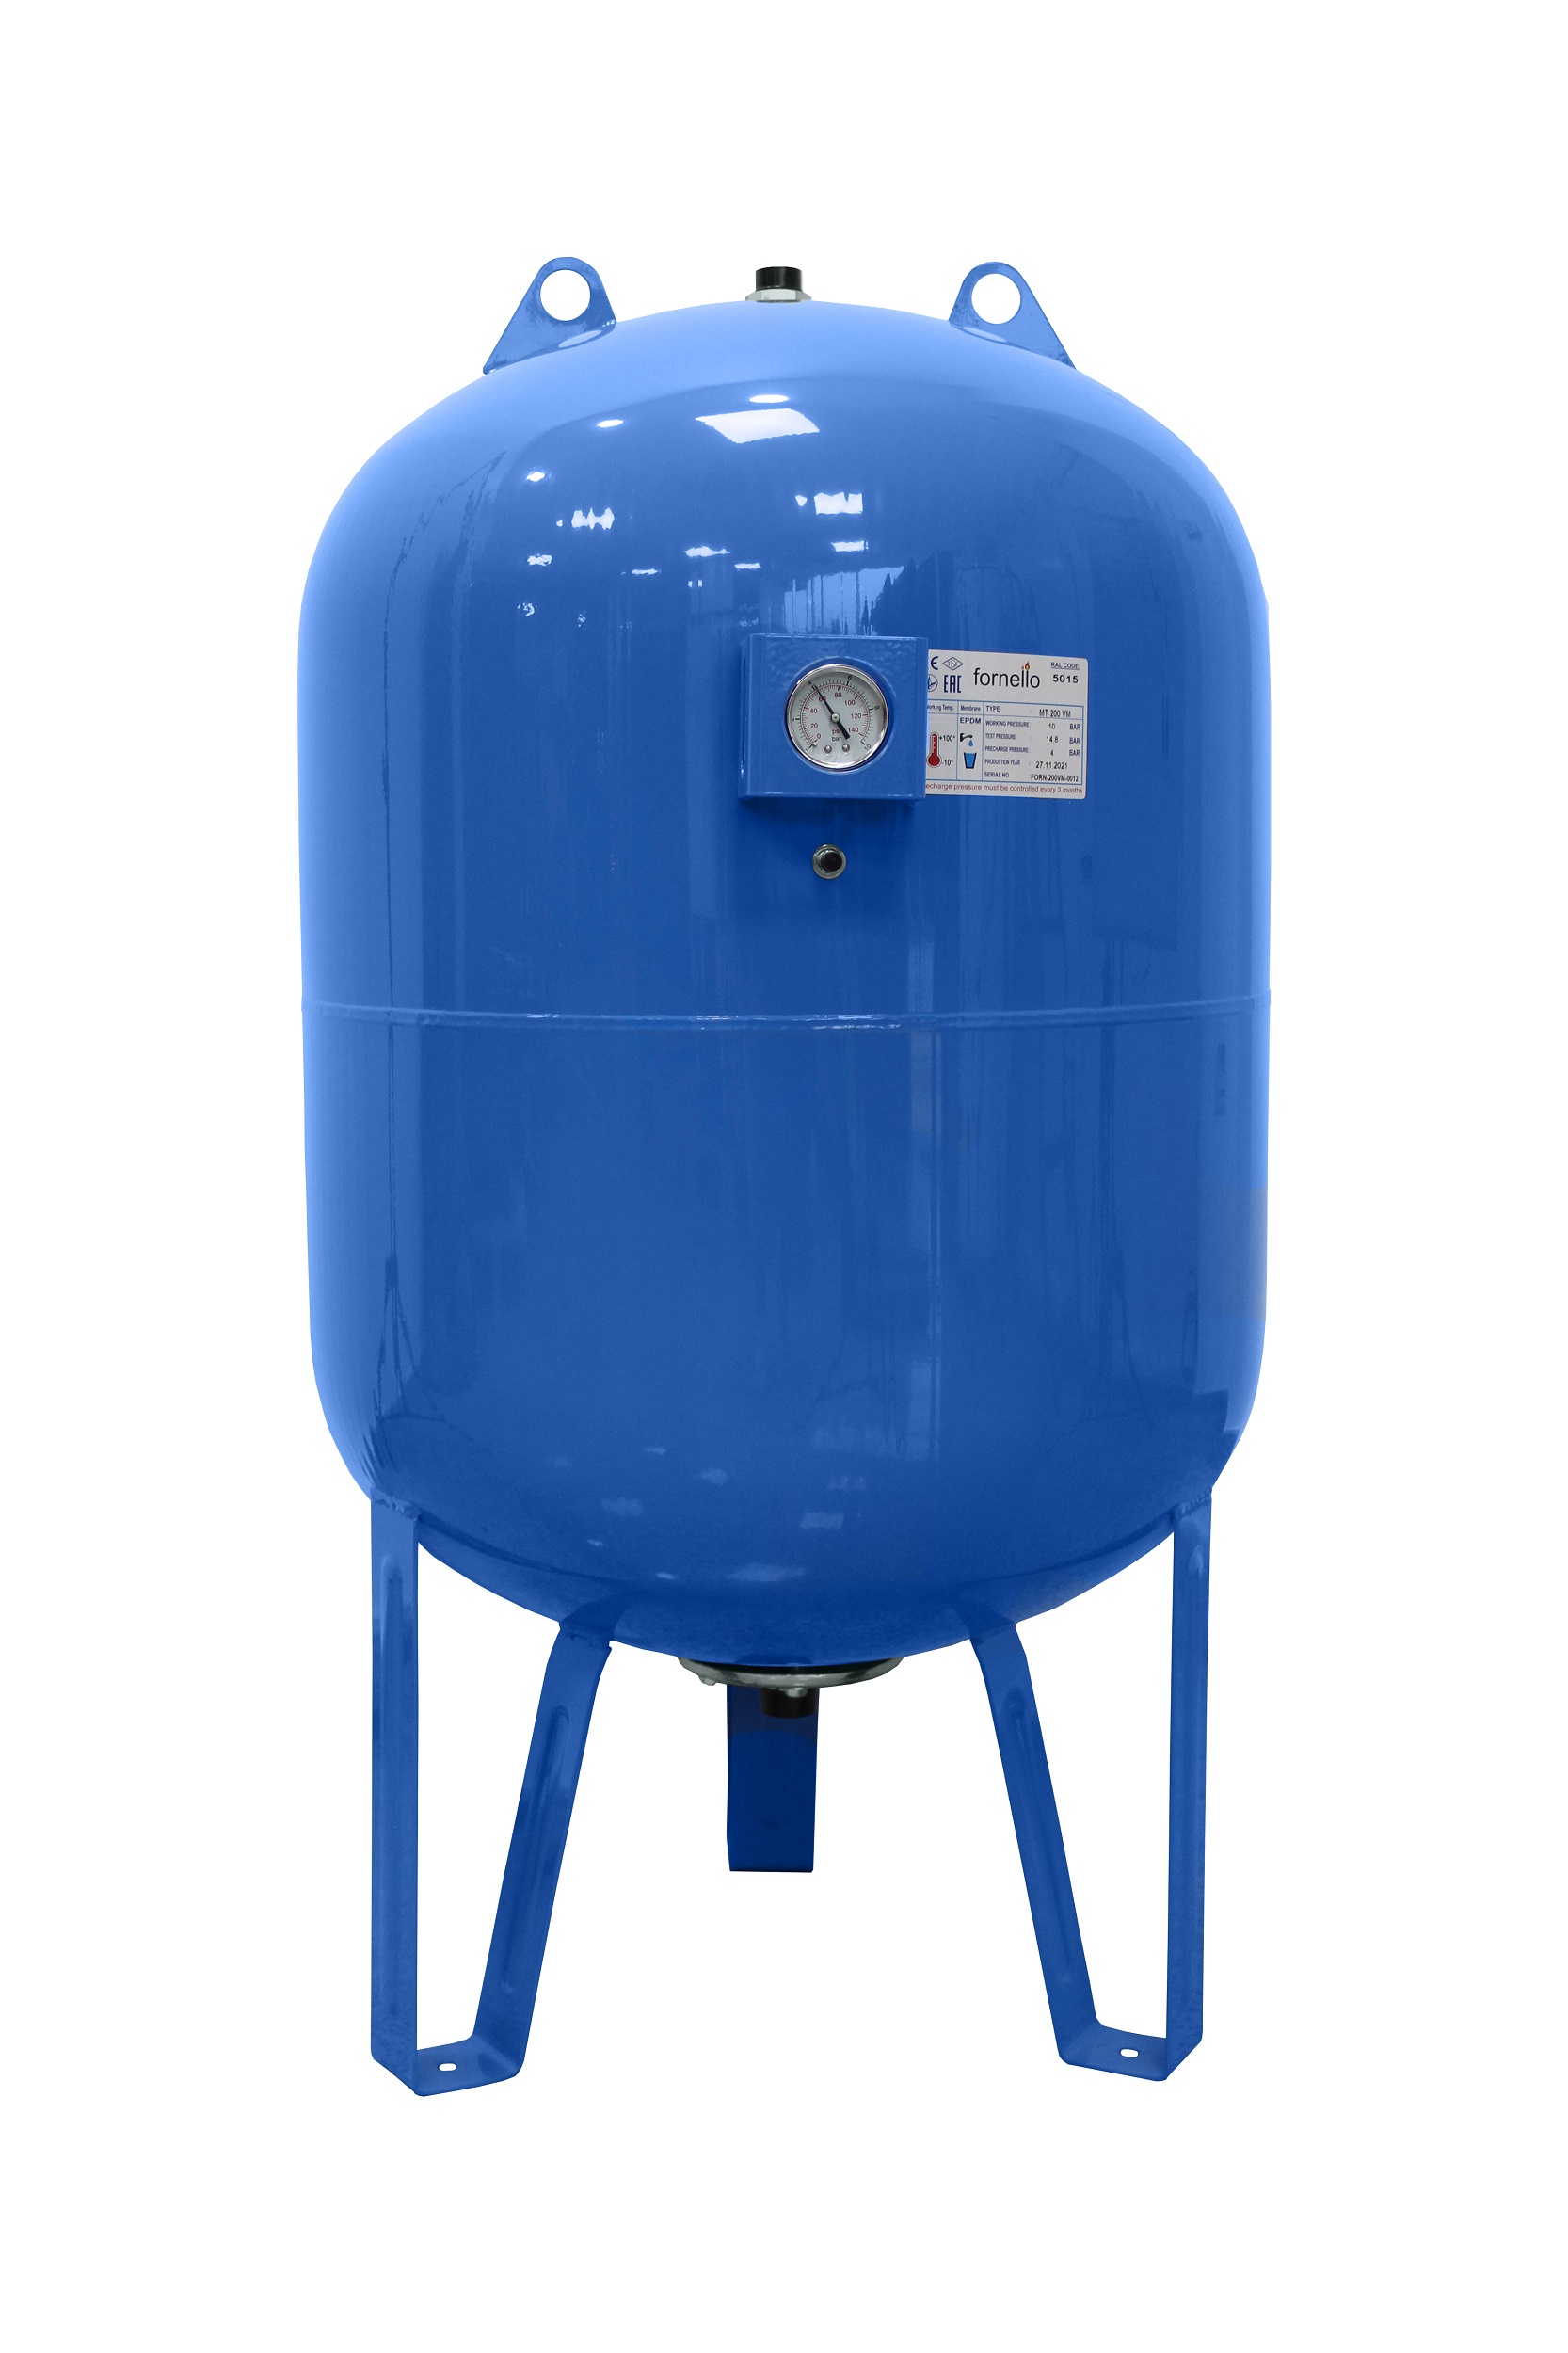 Vas expansiune pentru hidrofor Fornello 200 litri, vertical, cu picioare si manometru, culoare albastru, presiune maxima 10 bar, membrana EPDM 200 imagine noua